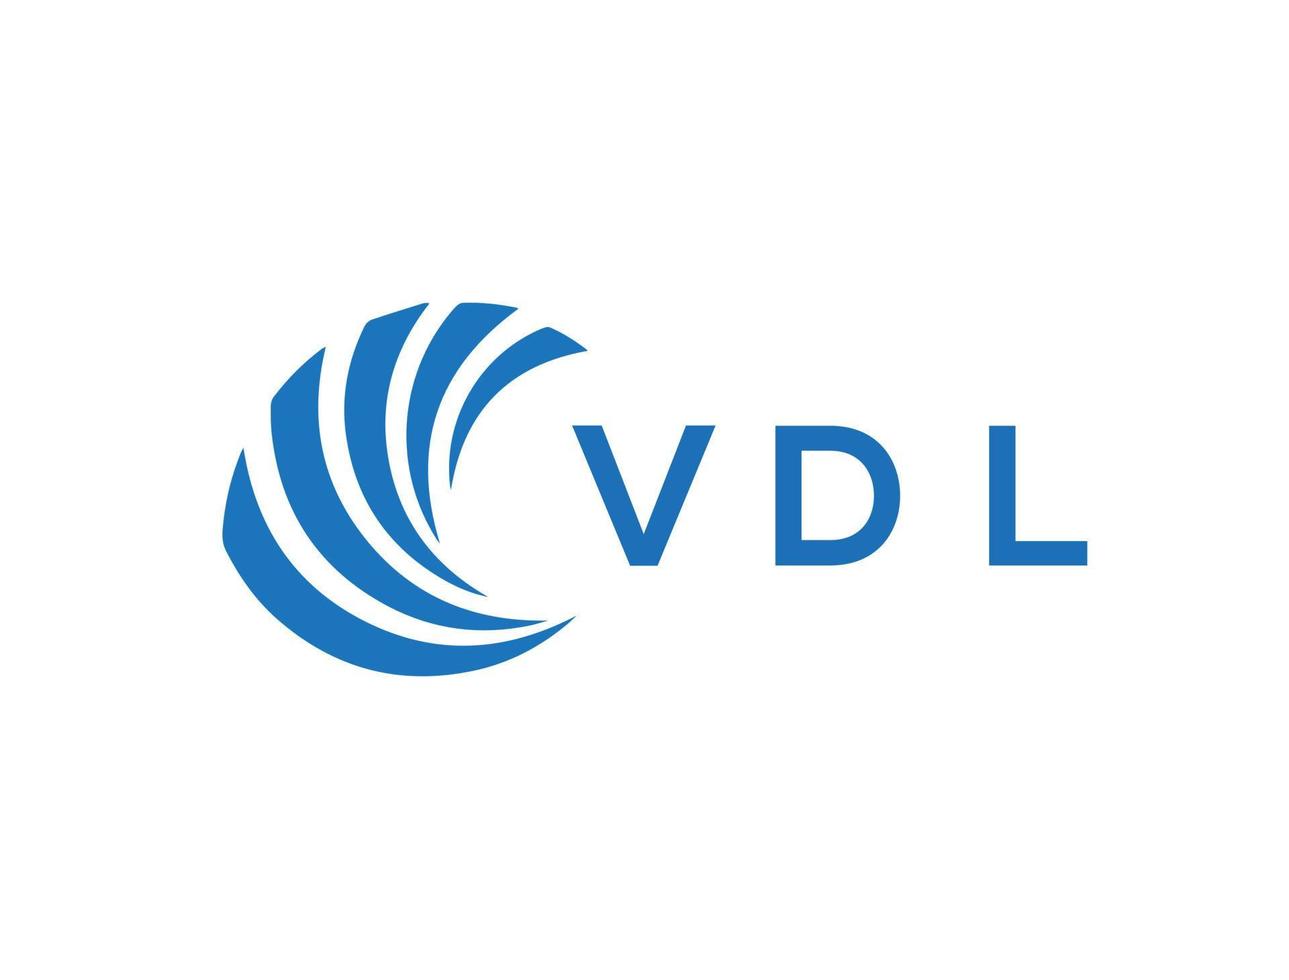 VDL letter logo design on white background. VDL creative circle letter logo concept. VDL letter design. vector